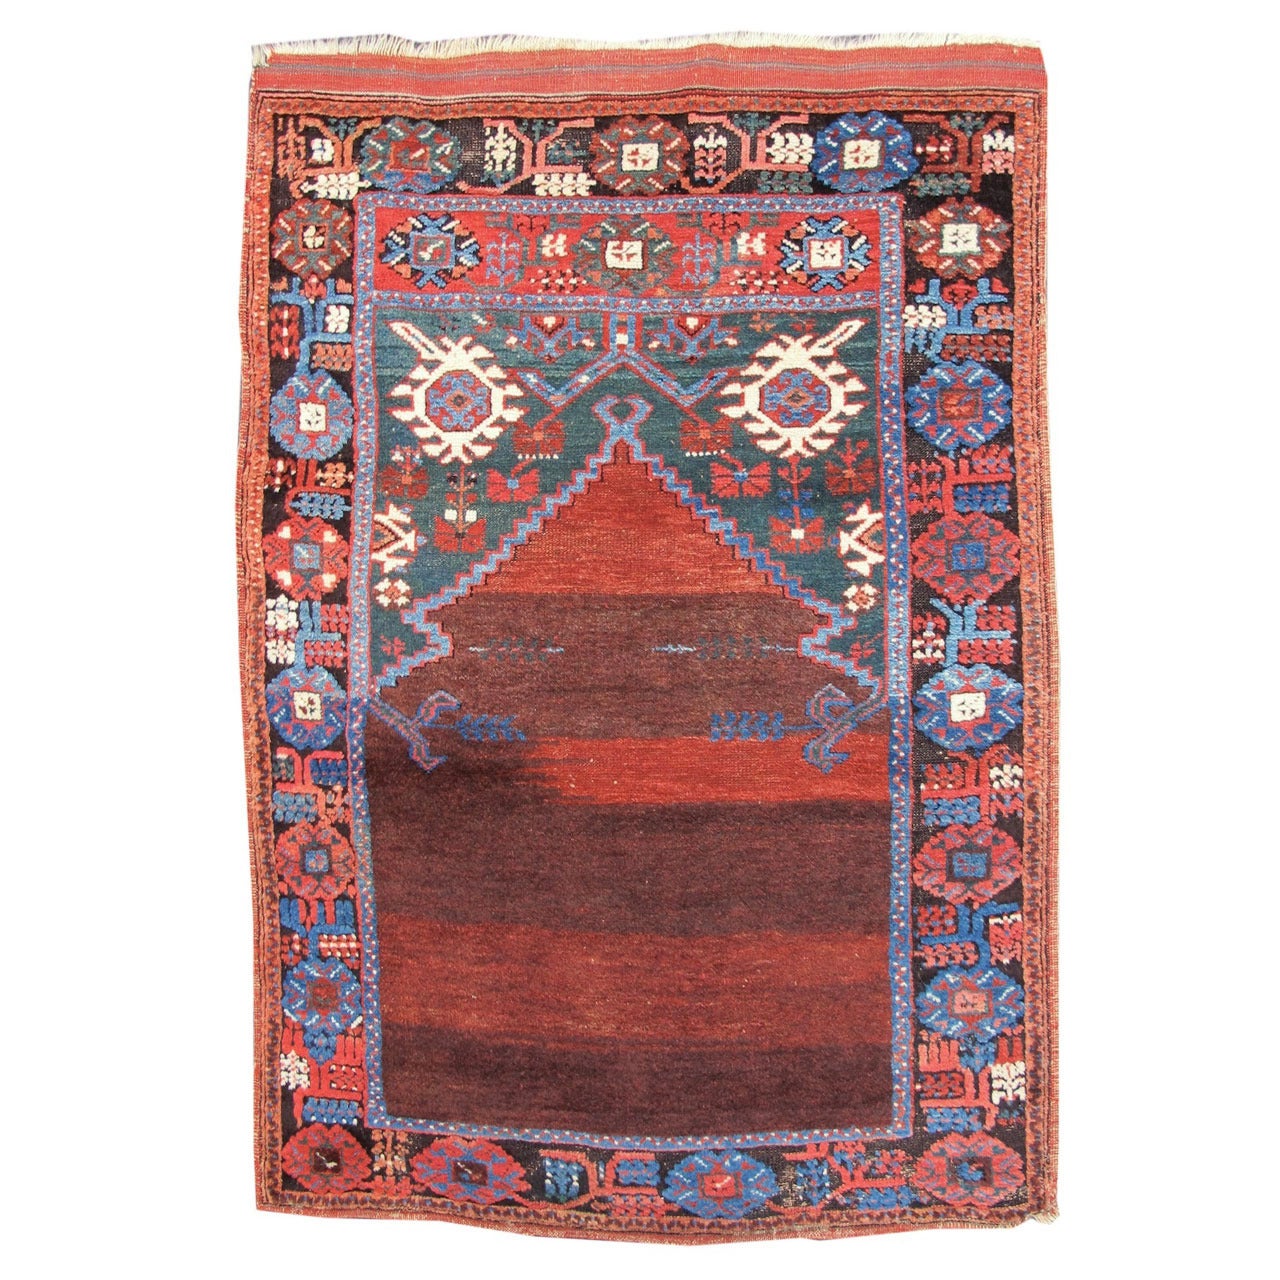 Roter türkischer Karapinar-Gebetteppich aus dem späten 19. Jahrhundert